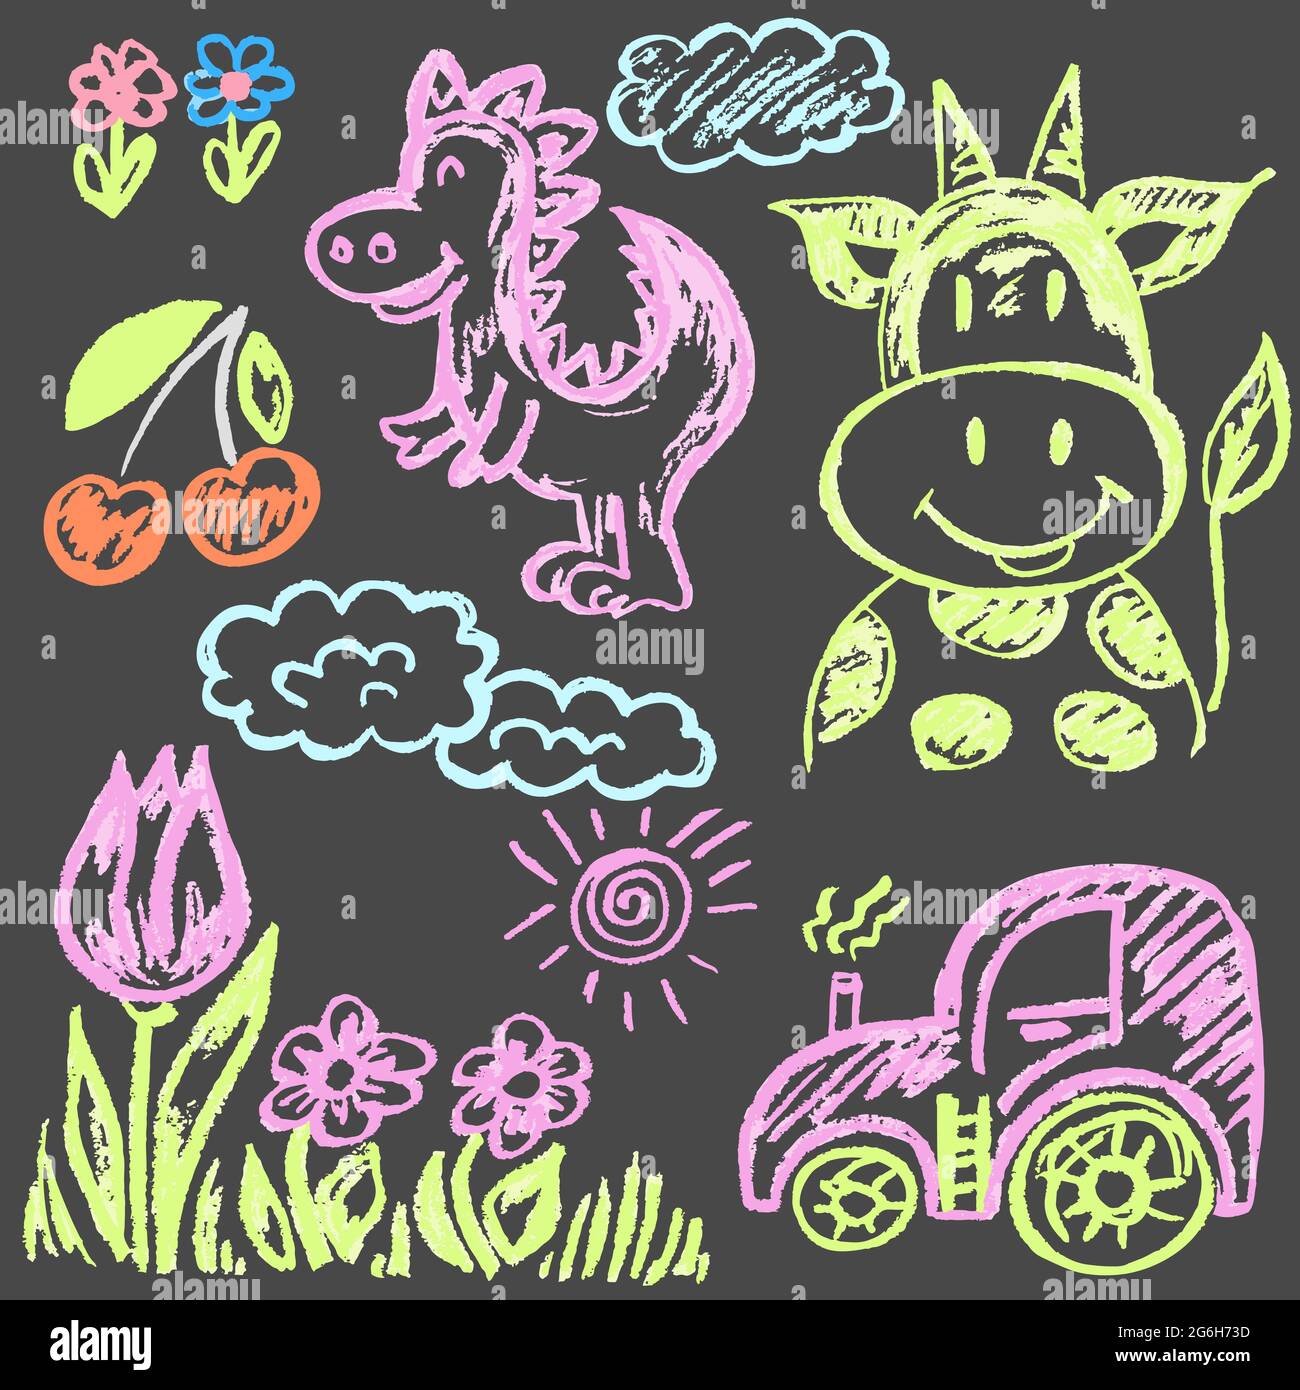 Joli dessin enfant avec craie colorée sur fond gris. Craie pastel ou crayon drôle de style Doodle vecteur. Vache, dinosaure, fleurs, tracteur Illustration de Vecteur